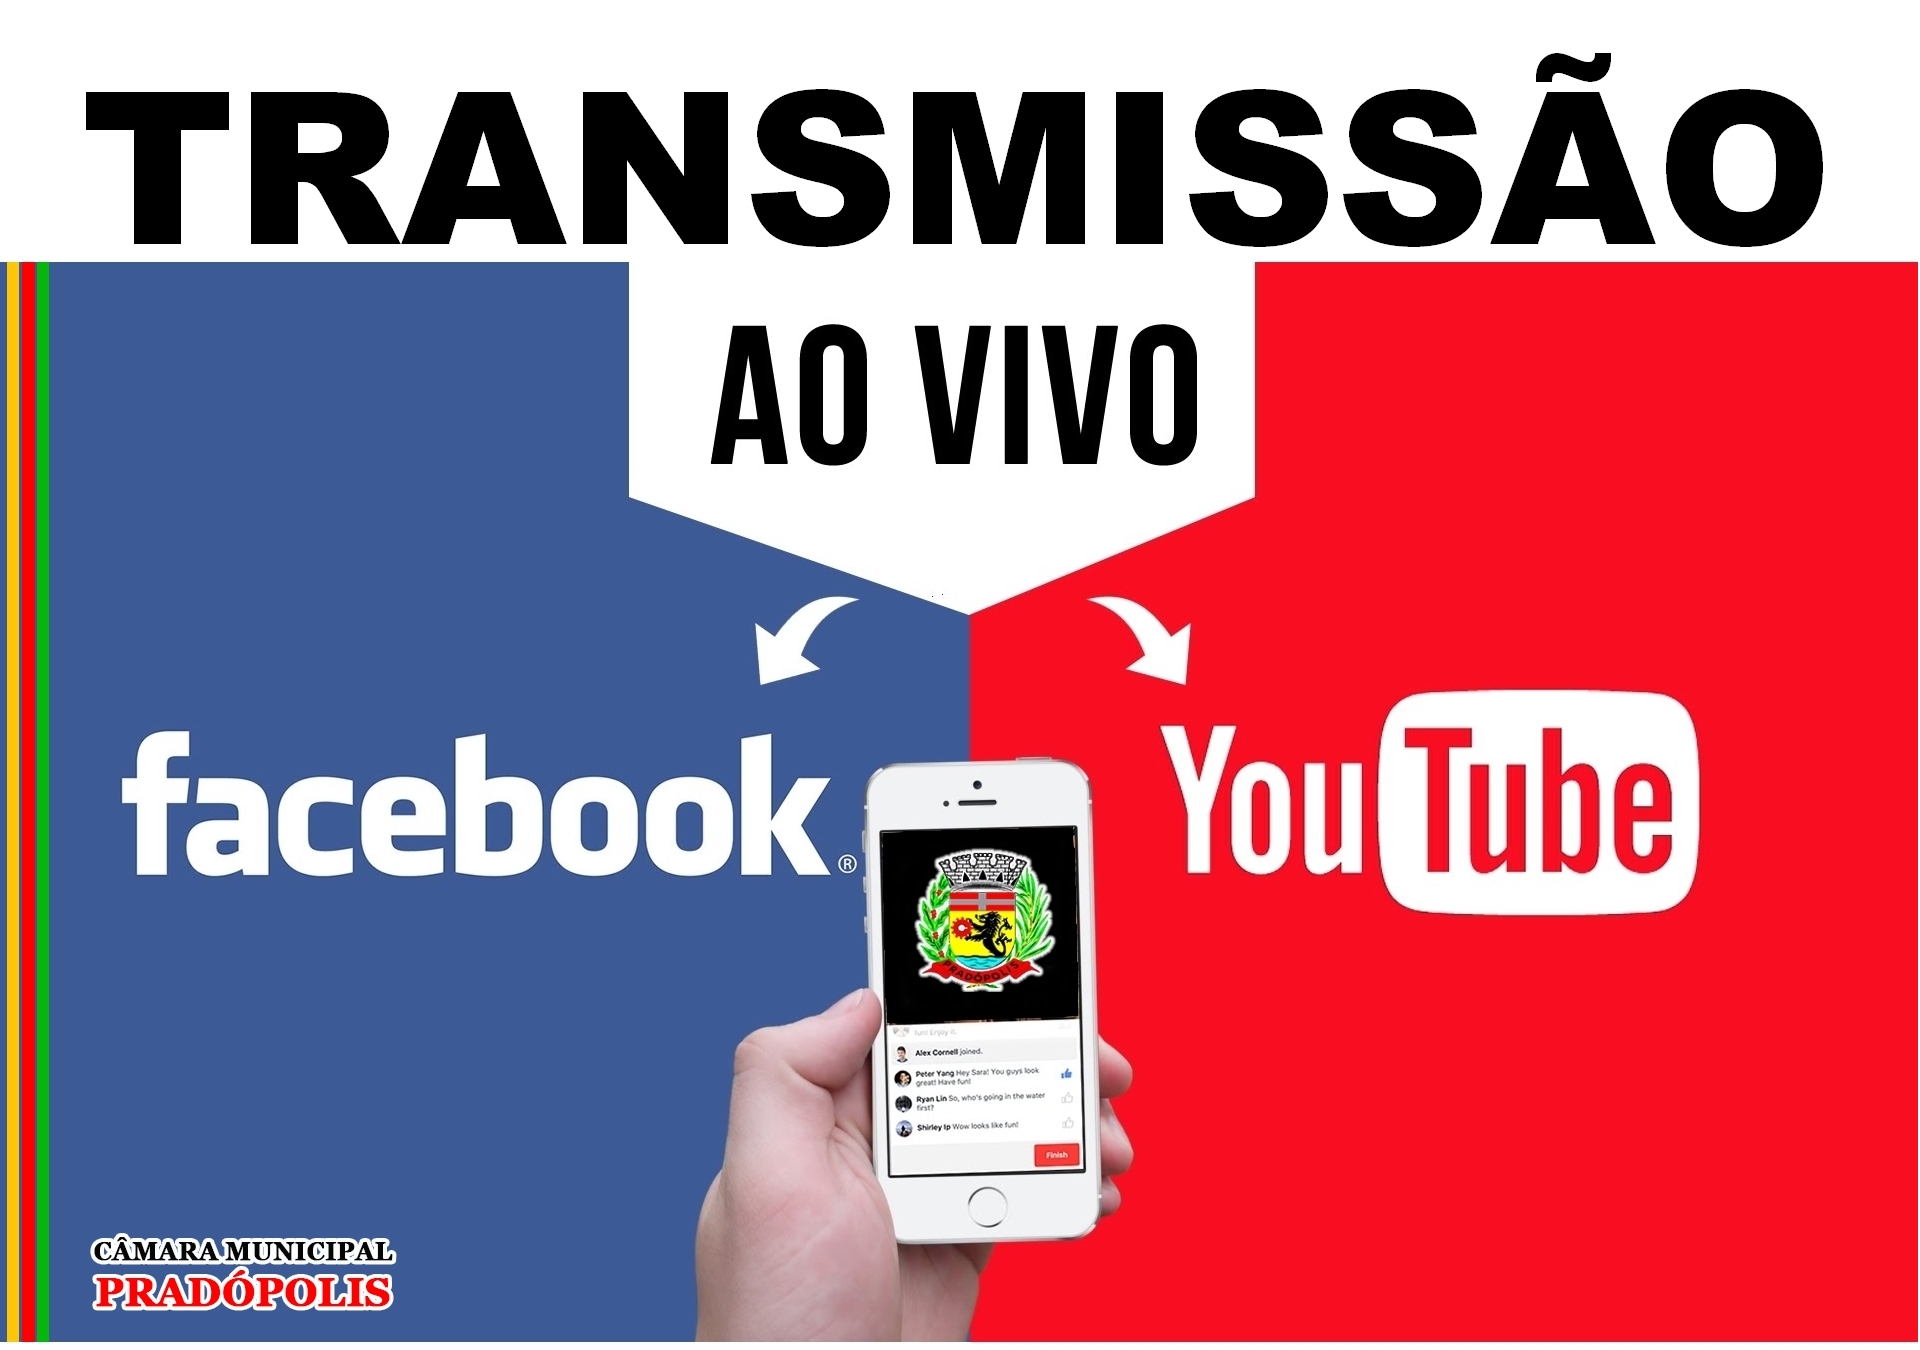 TRANSMISSÃO AO VIVO!!